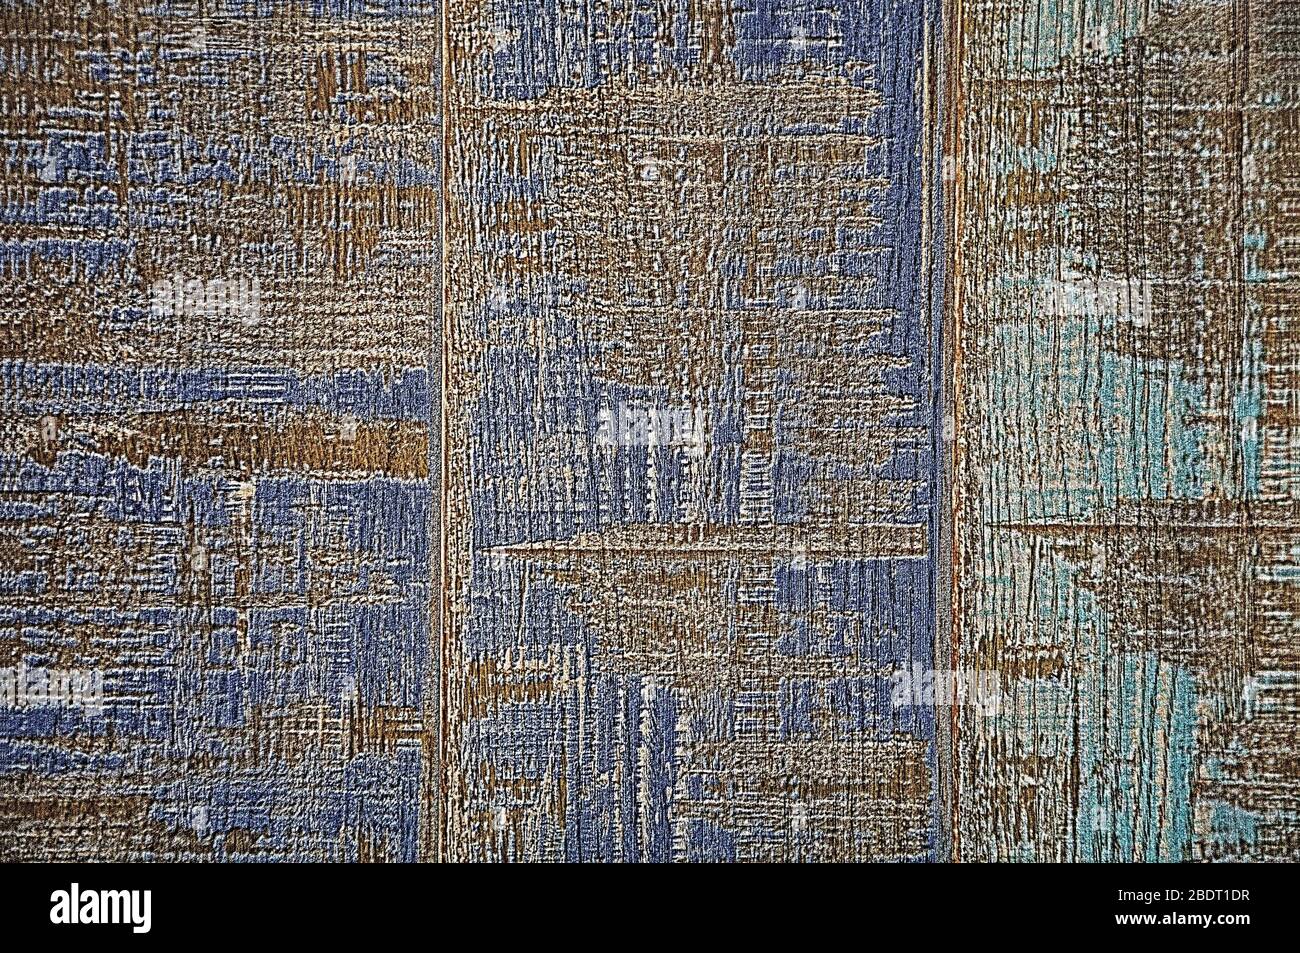 Struktur Holz. Blau und türkis Hintergrund der alten Farbe. Unten ist die natürliche Farbe des Holzes. Stockfoto